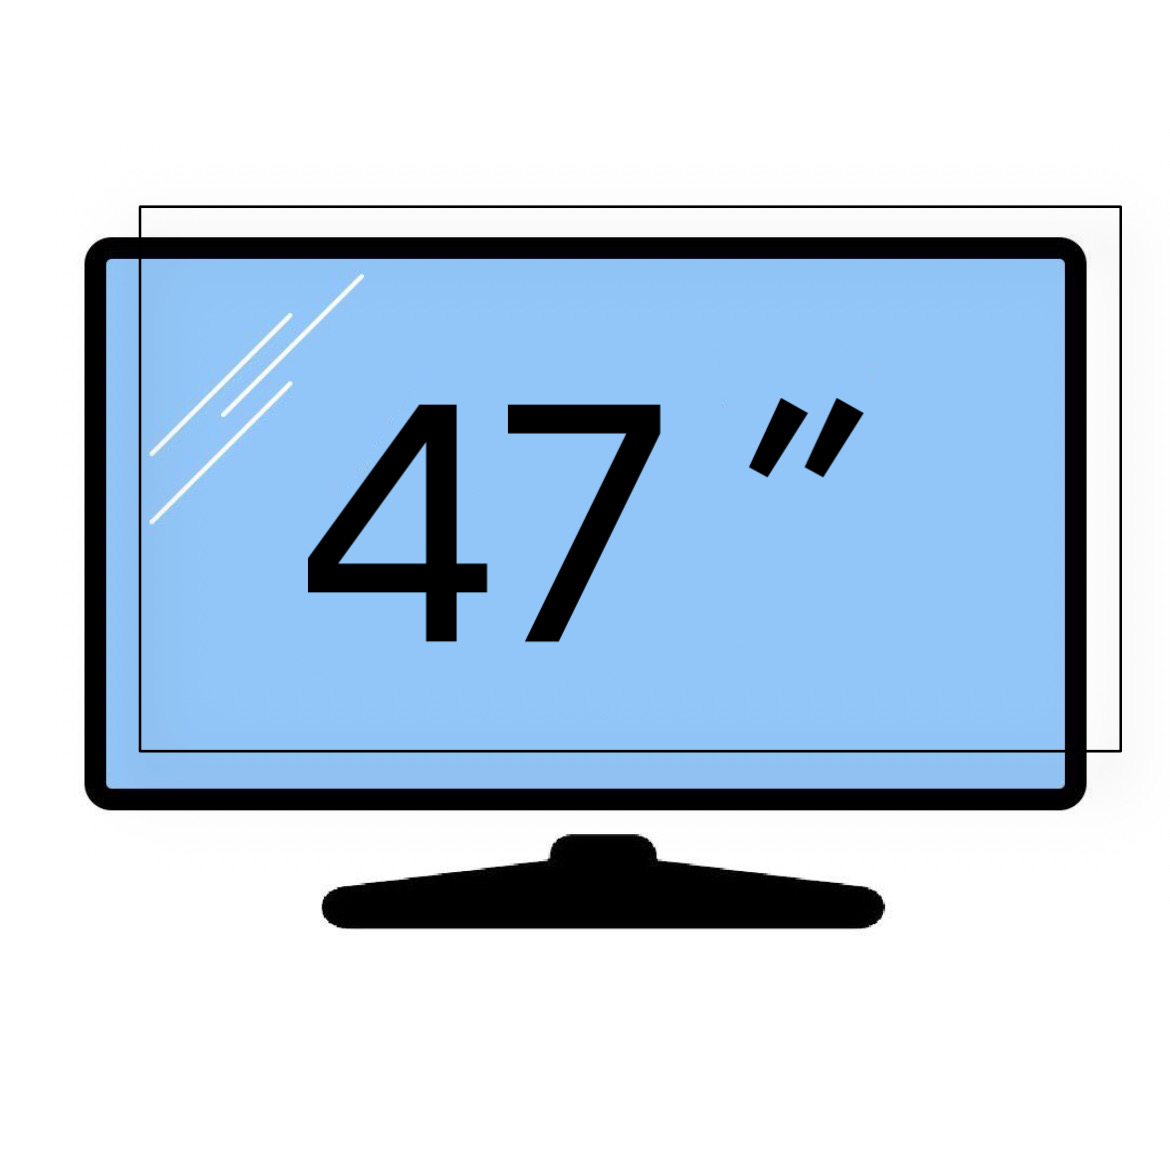 محافظ صفحه تلویزیون 47 اینچ (ابعاد 62.5*107) 2 میل تایوانی